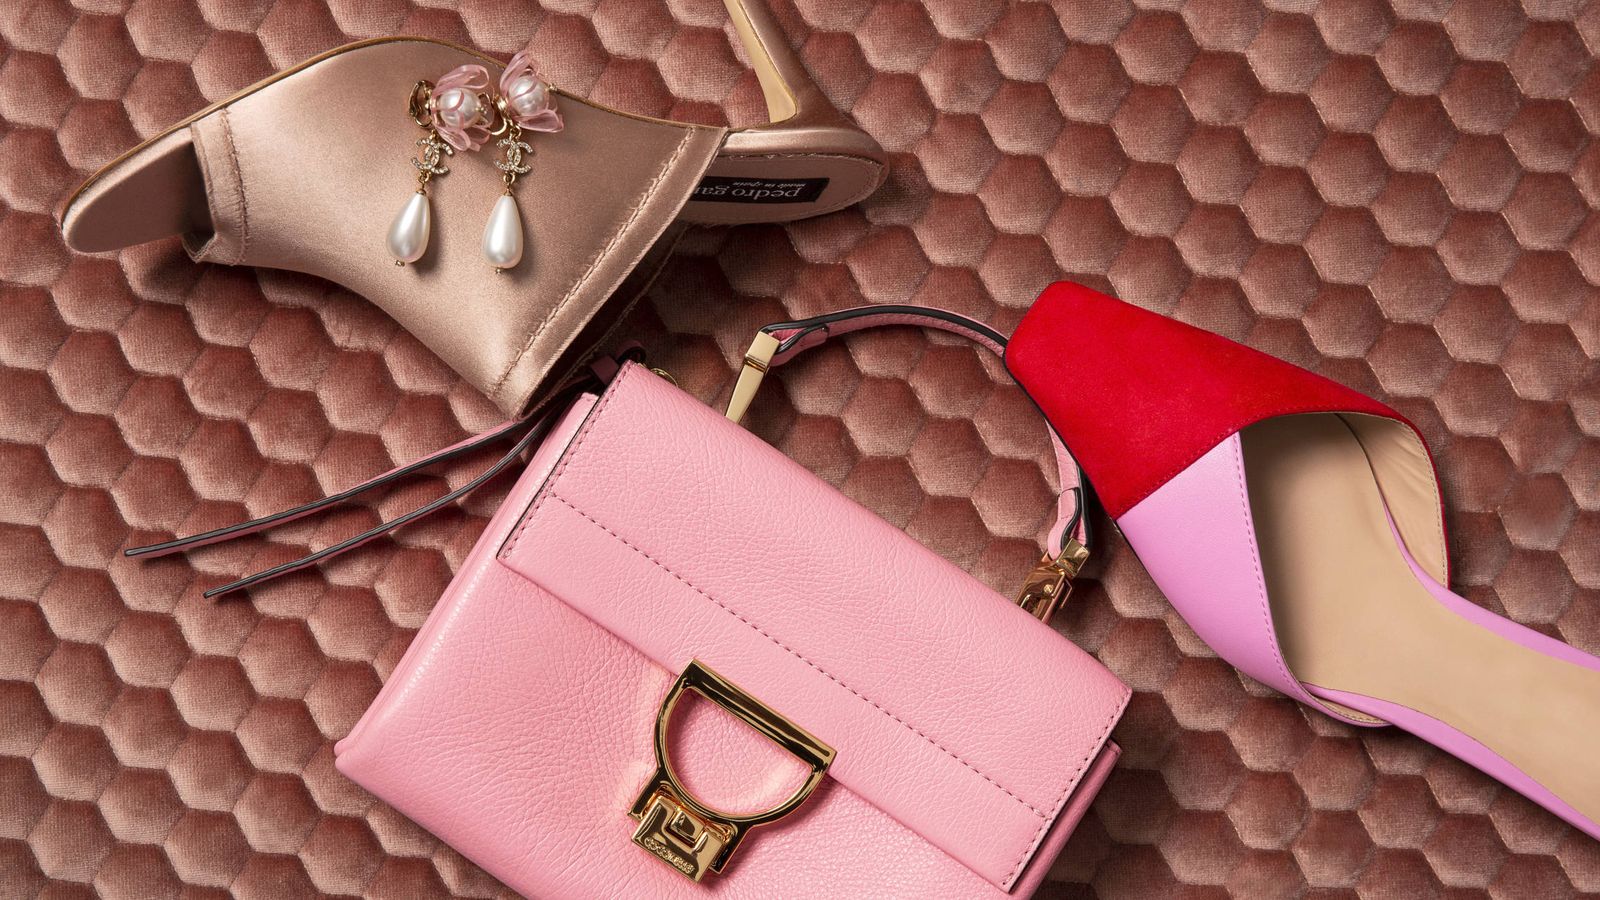 Foto: Bolsos, zapatos y joyas. Todos los accesorios que necesitas para dar un toque romántico a tus looks están aquí. (Olga Moreno)